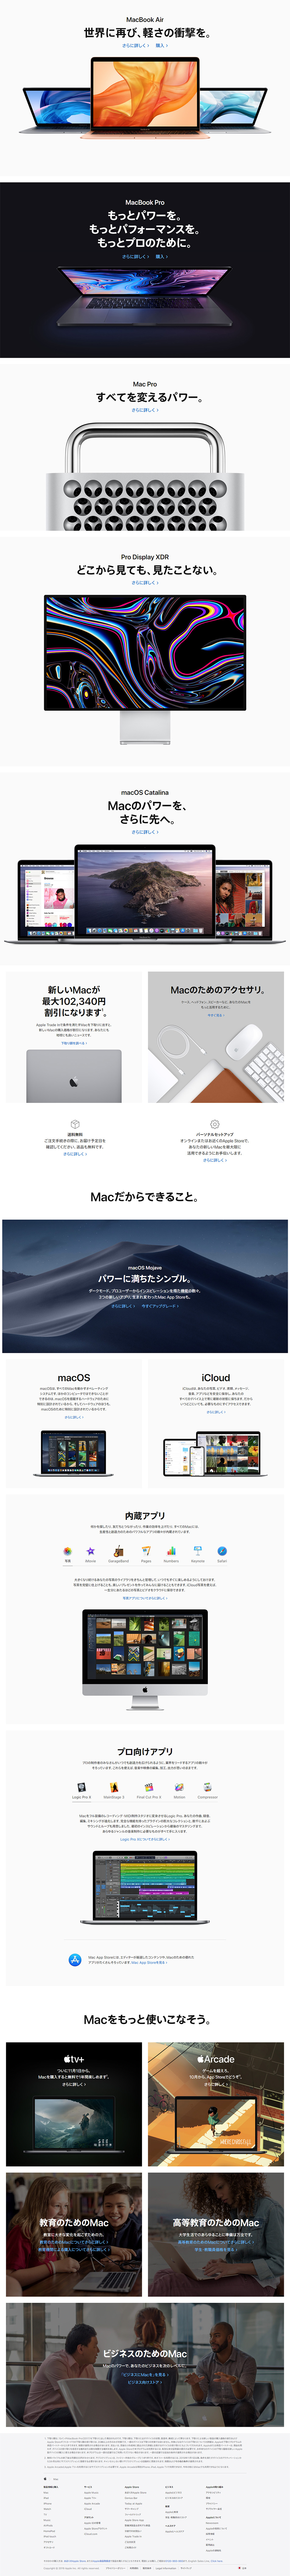 Mac_pc_1